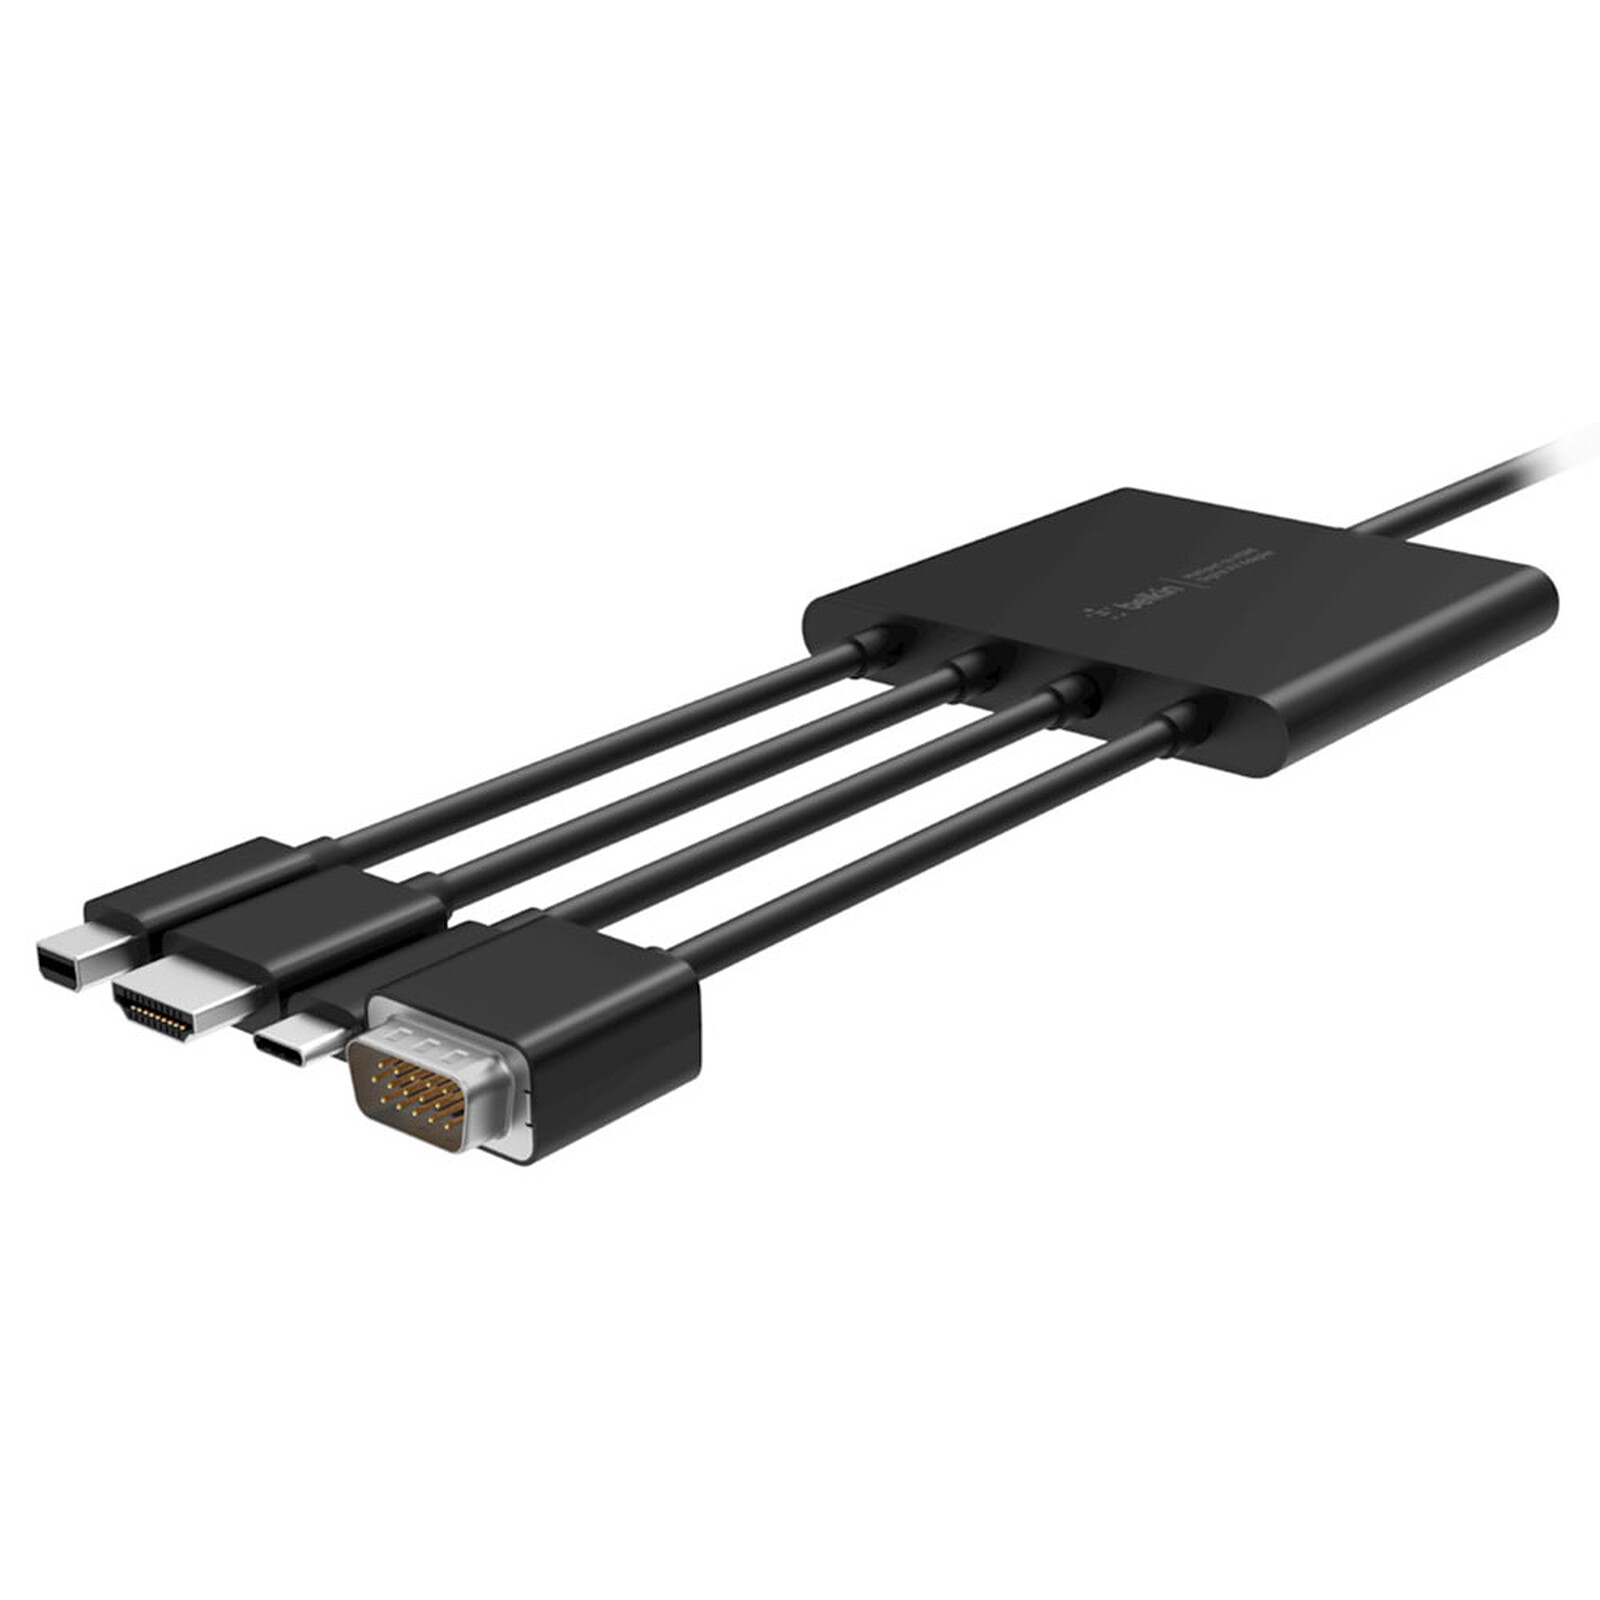 Adaptateur HDMI / VGA - HDMI - Garantie 3 ans LDLC